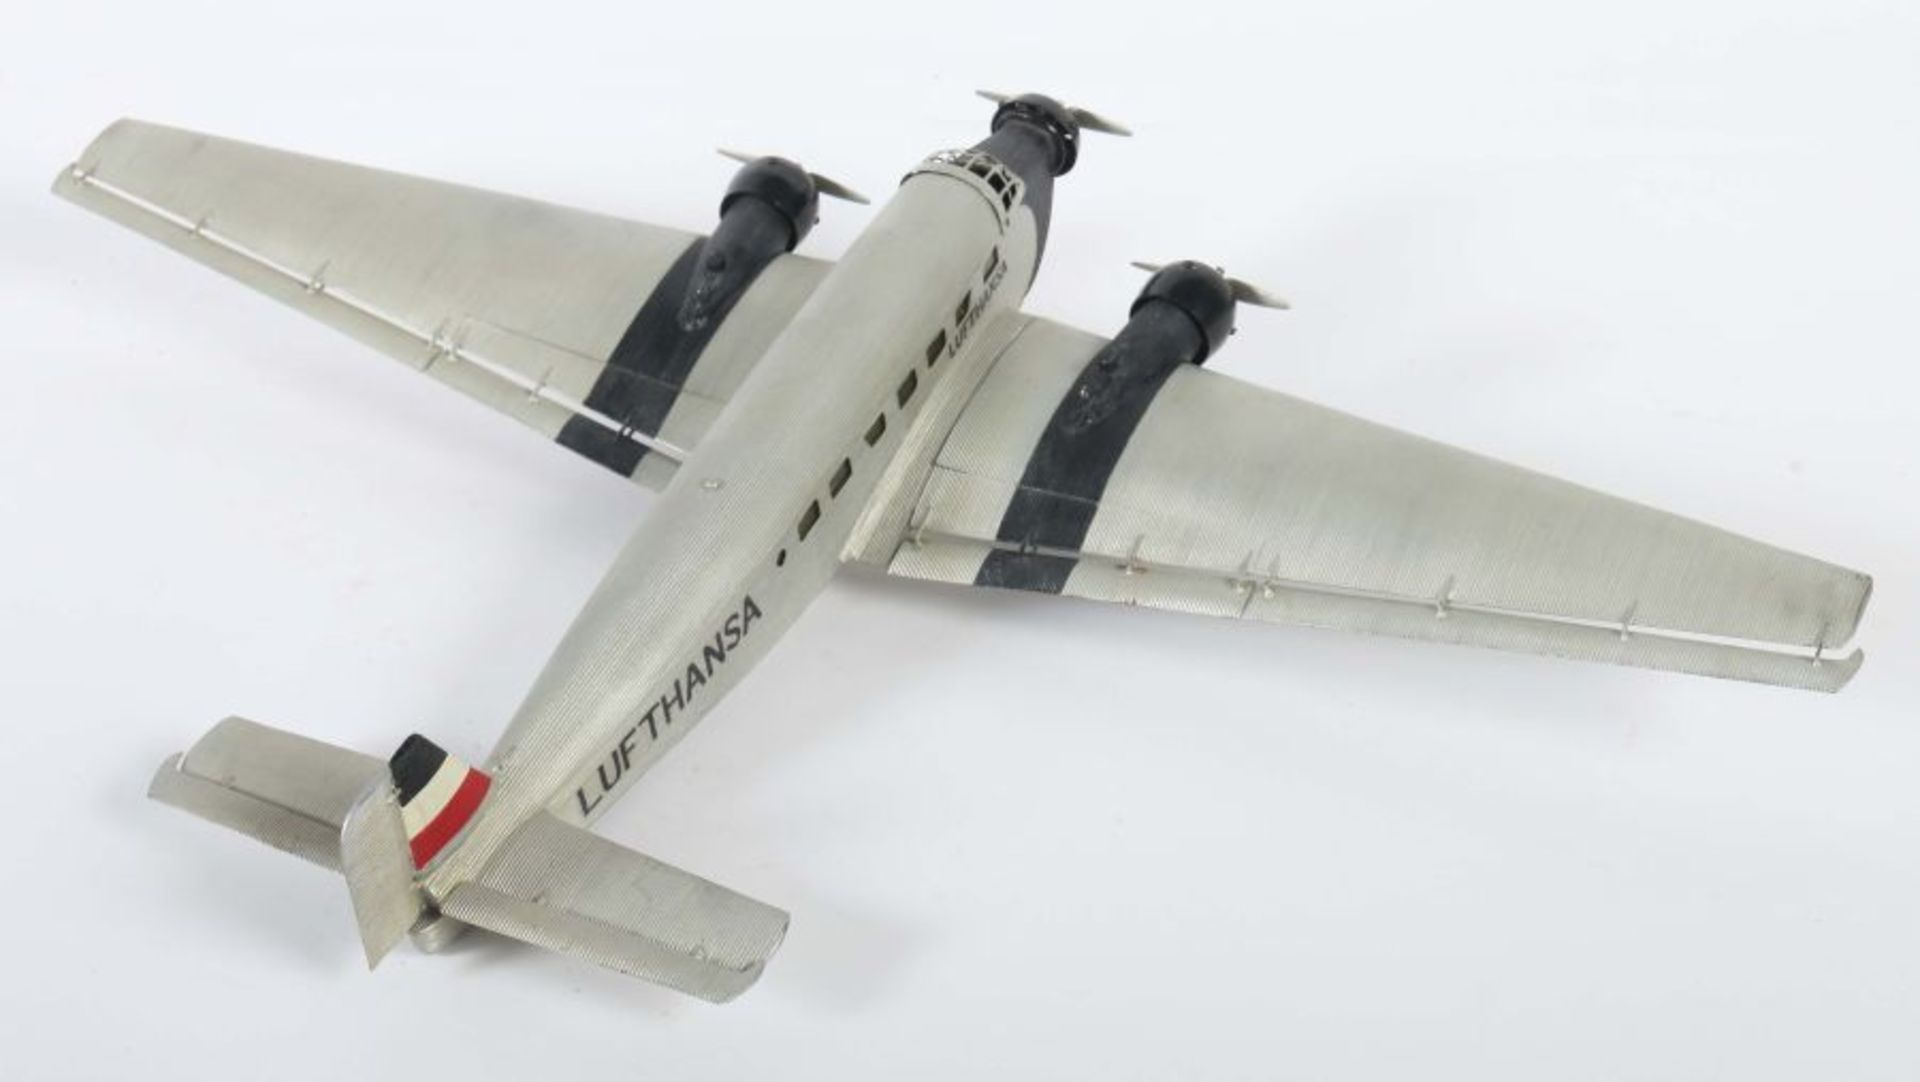 ModellflugzeugMärklin, Junkers "JU 52", histrorisches Reisebüromodell, 3-motorig, Wellblech, - Bild 3 aus 6